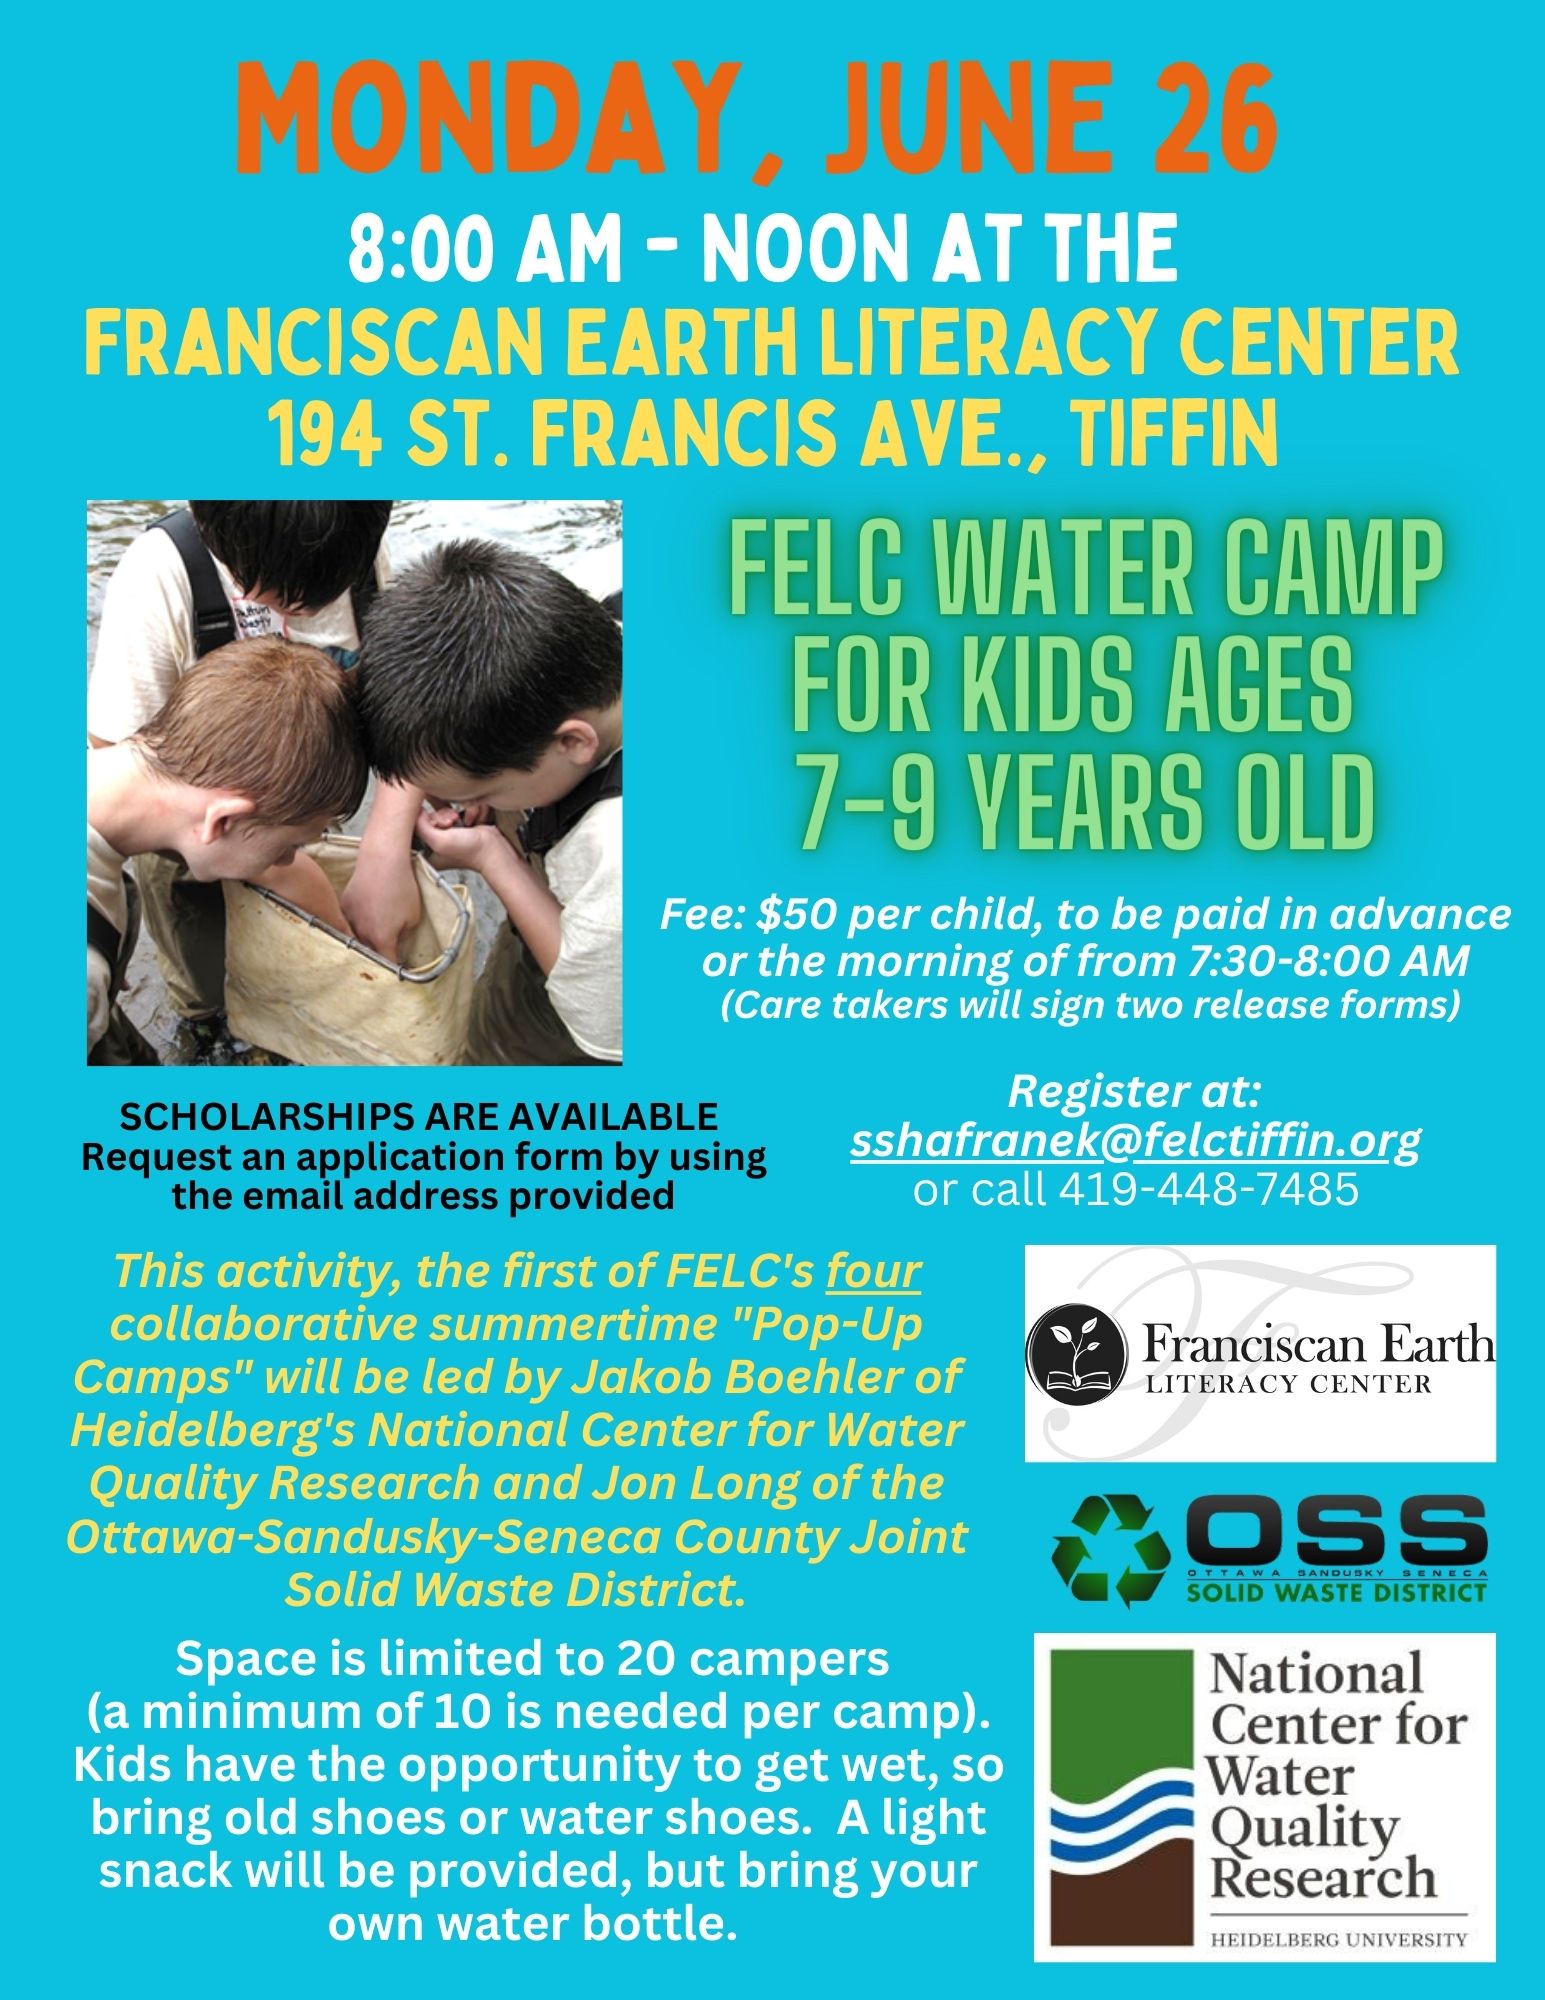 FELC Water Camp